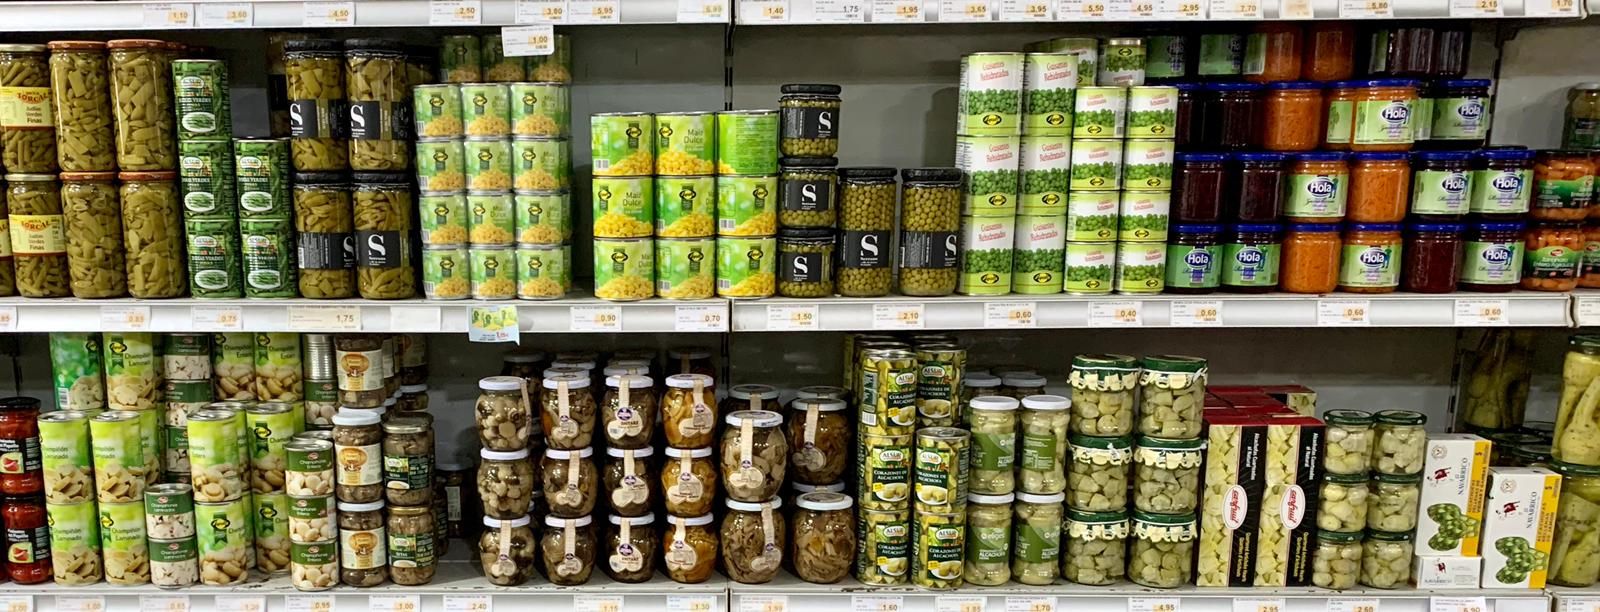 Tu supermercado de confianza en Huelva